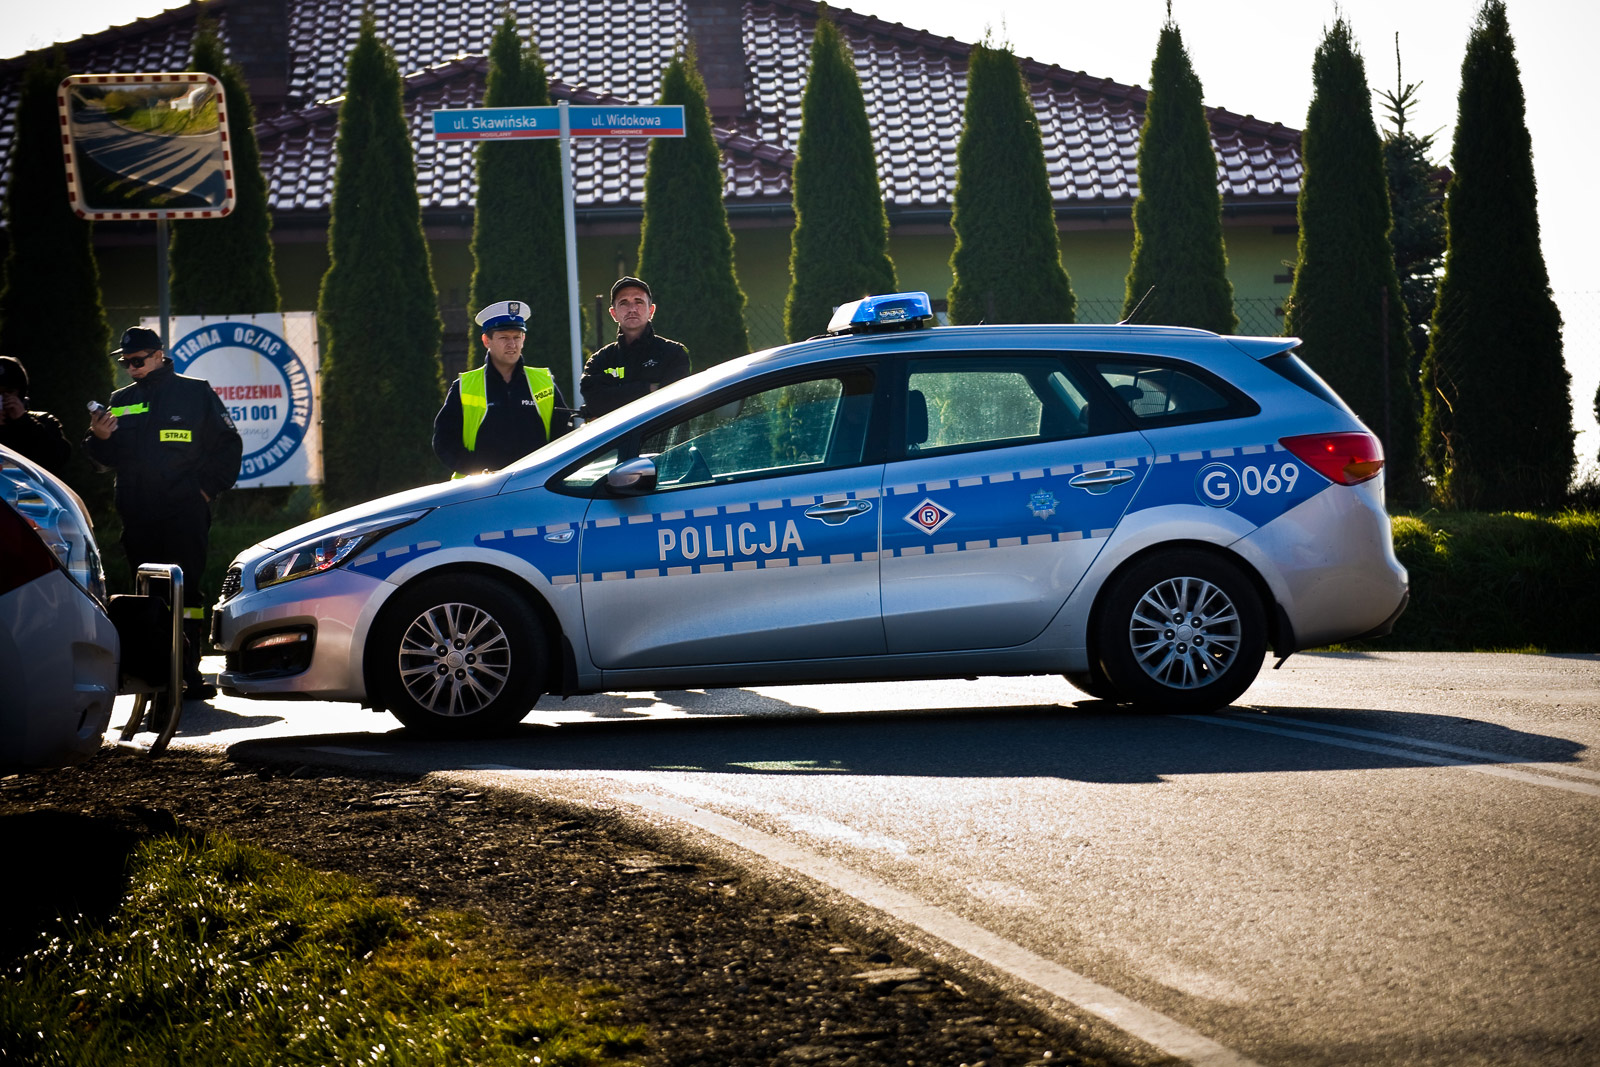 przekierowanie ruchu i zabezpieczenie trasy biegu Niepodległości Skawina - Mogilany przez radiowóz policyjny